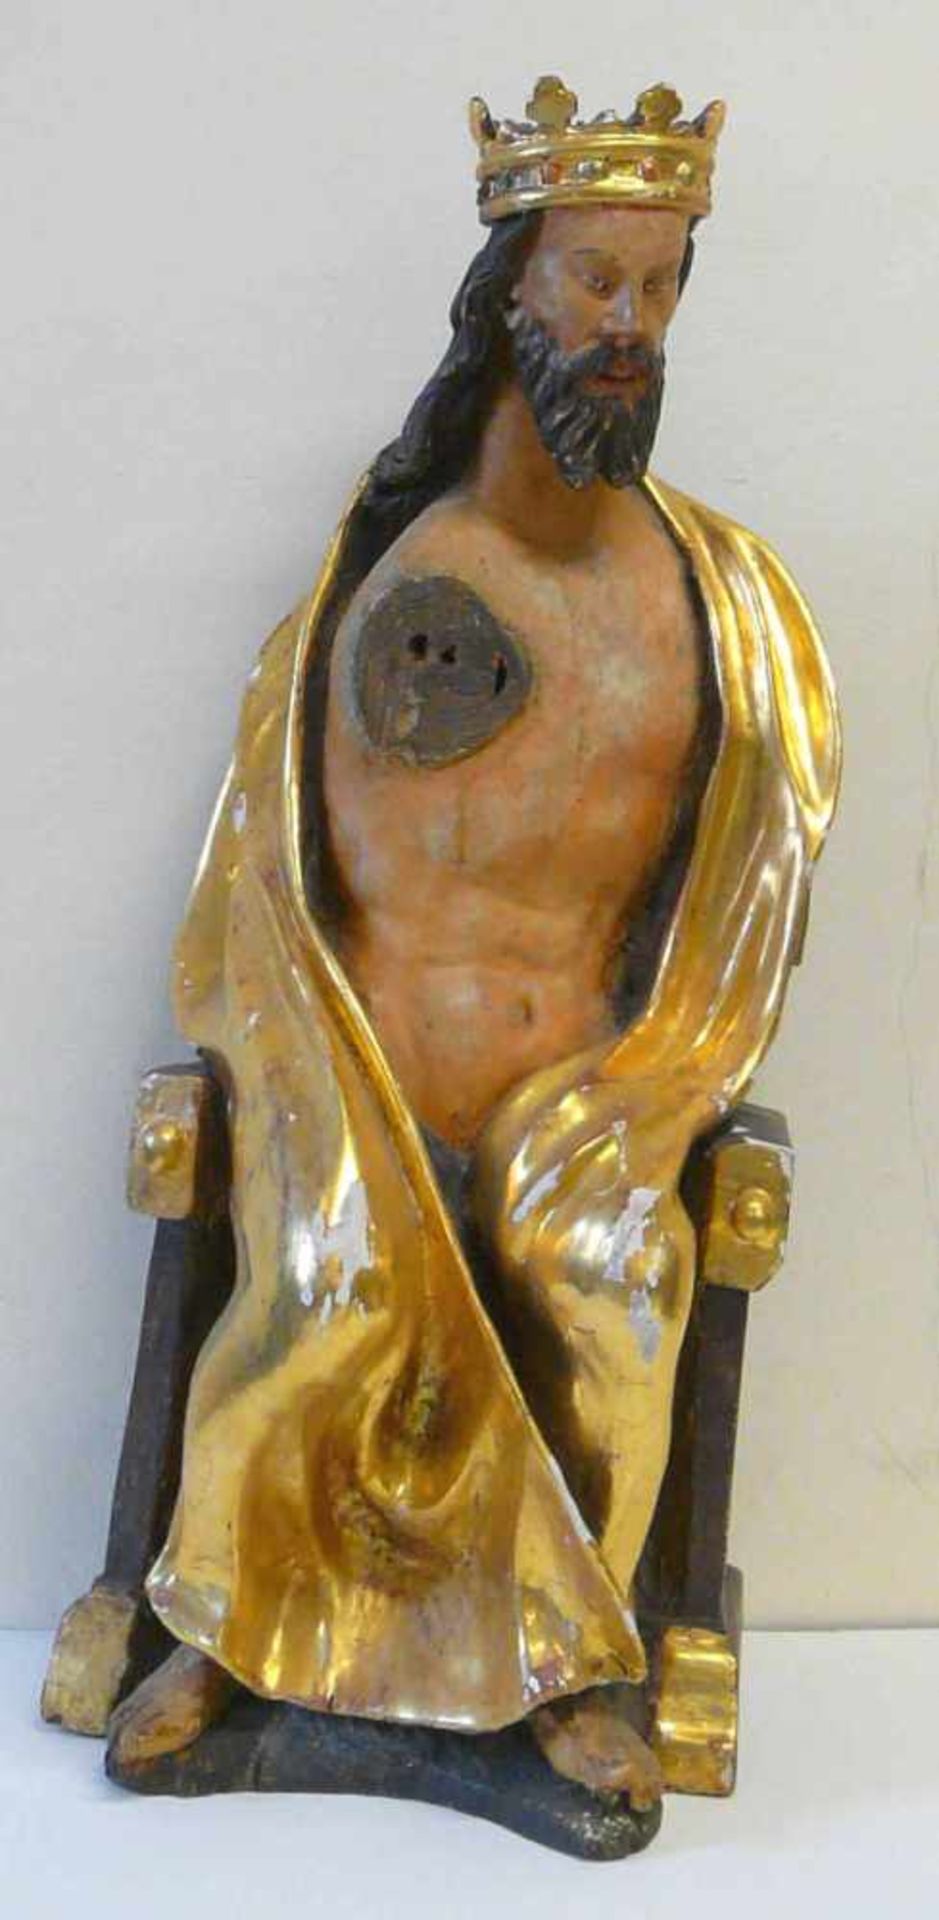 Gotischer Christus - Majestas DominiHolz, geschnitzt, rückseitig gehöhlt, vermutlich 15. / 16.